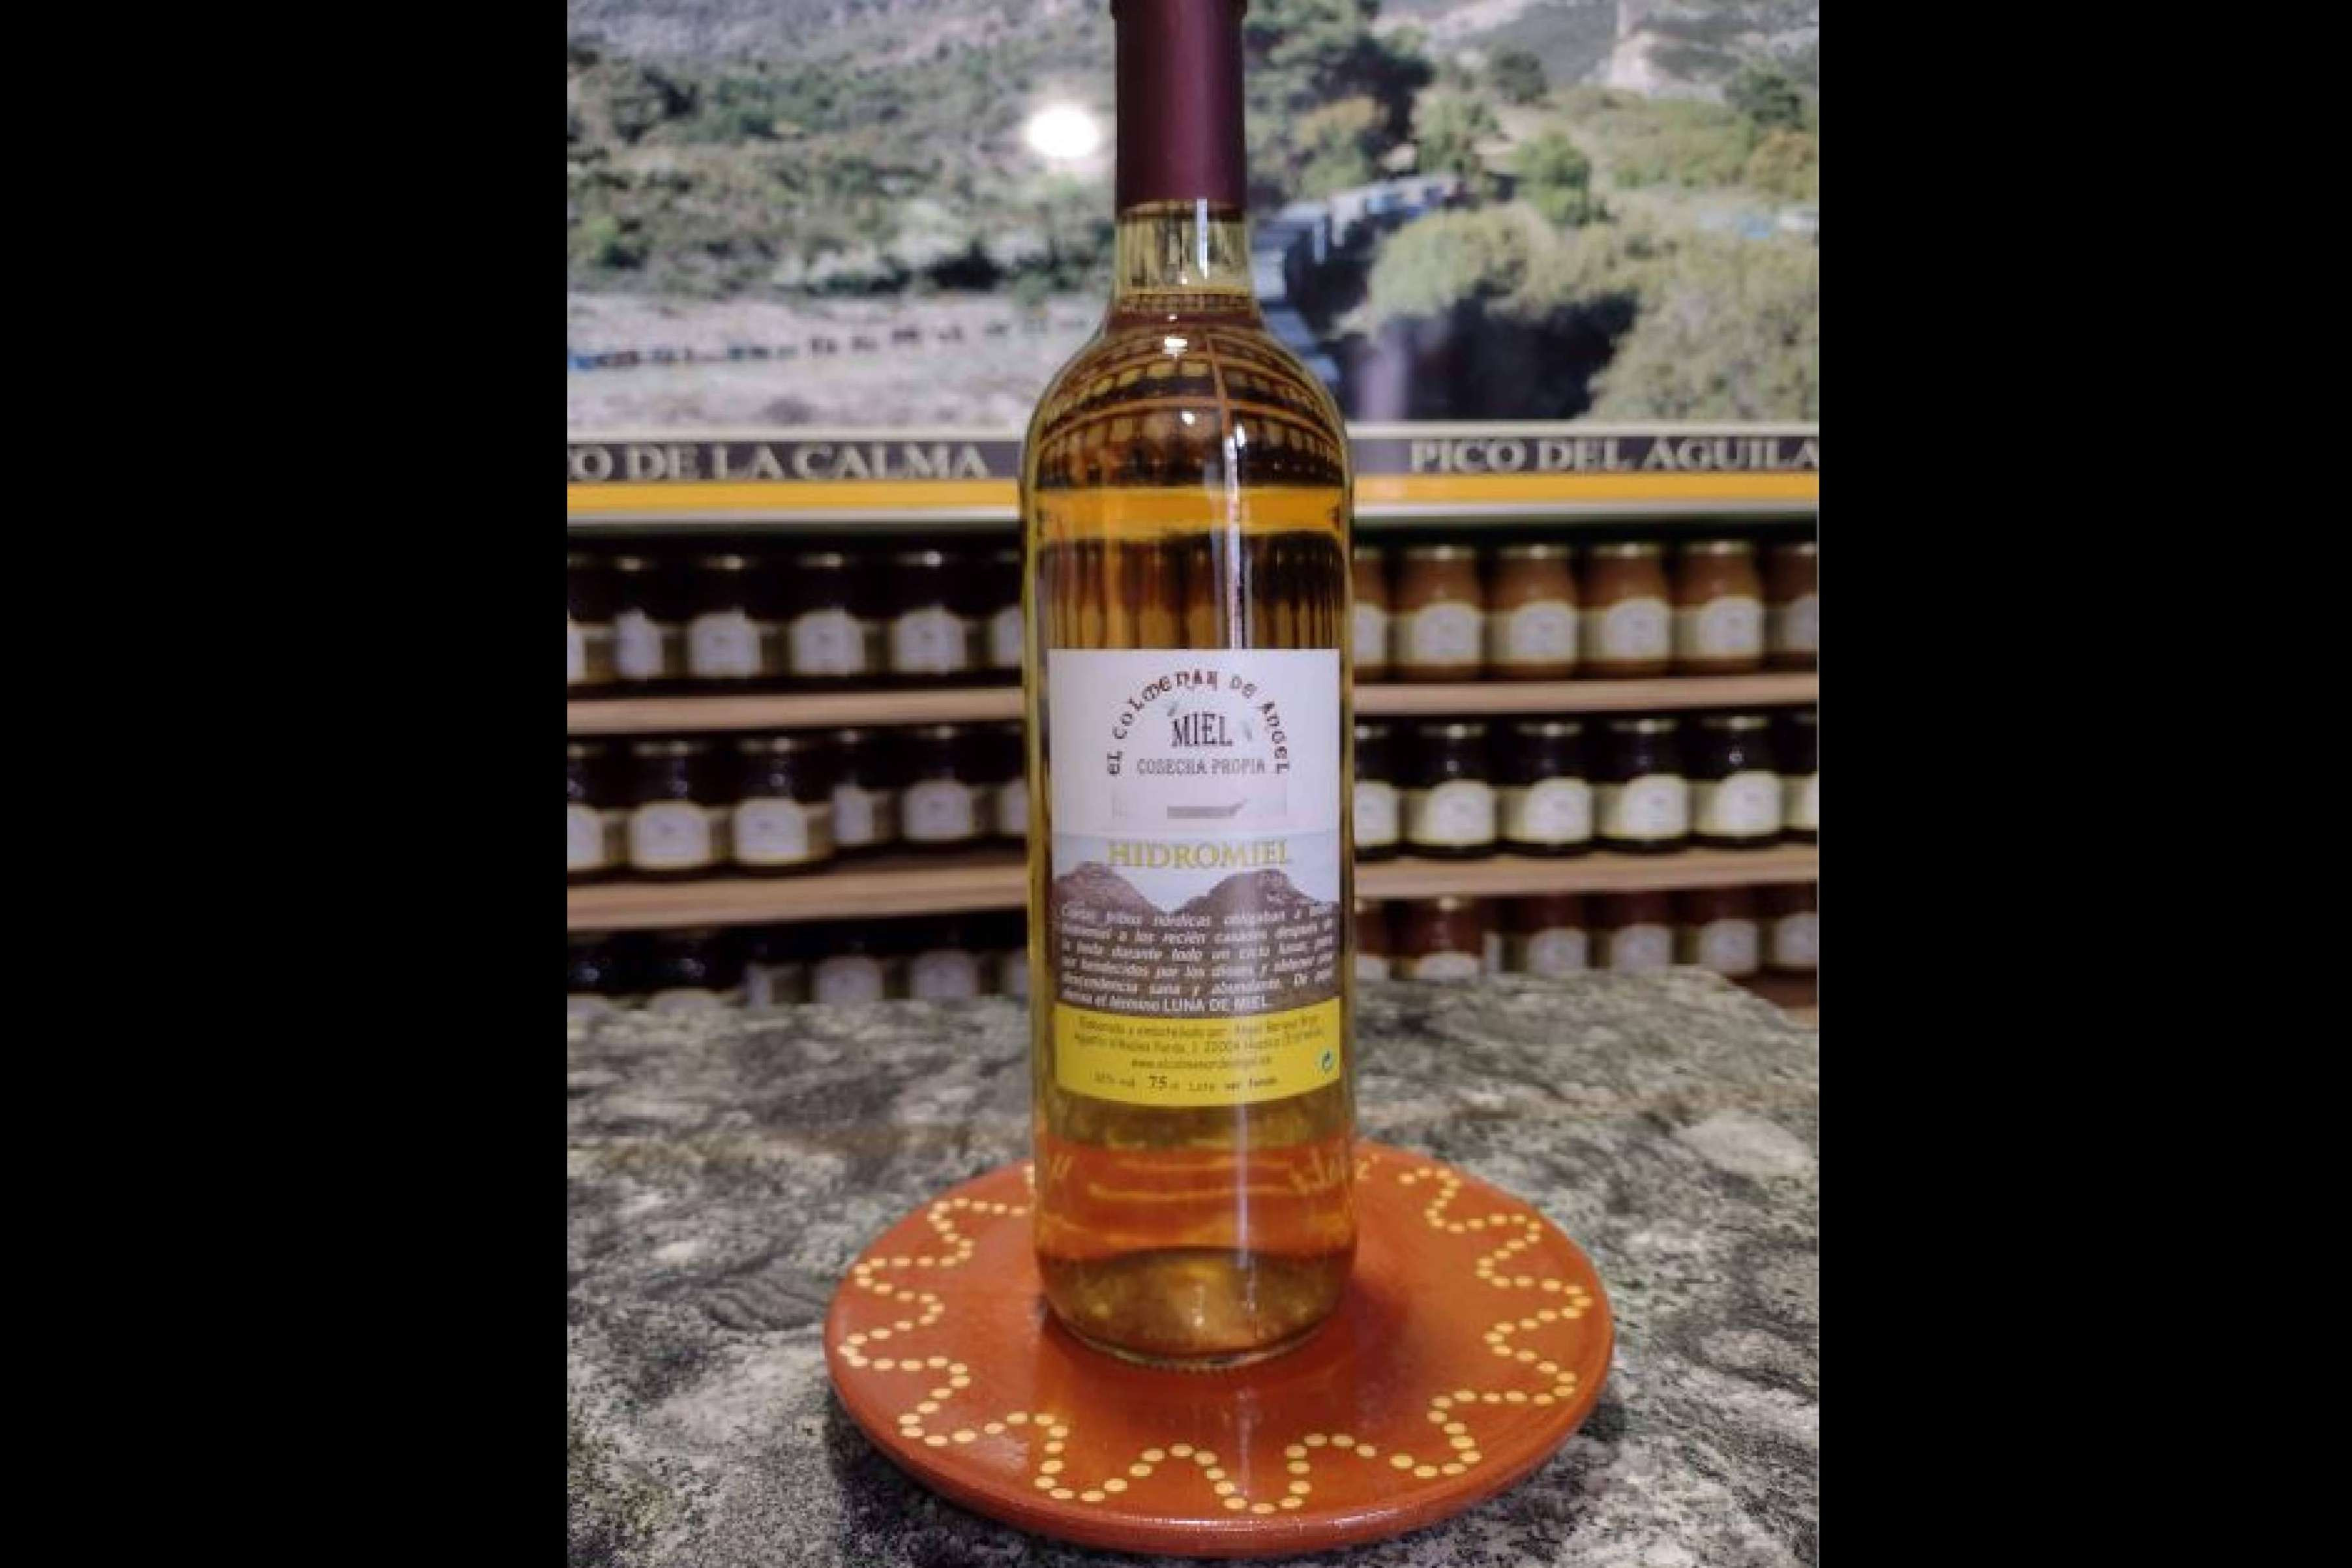  El Colmenar de Ángel es una empresa de Huesca que destaca por producir miel cruda e hidromiel 